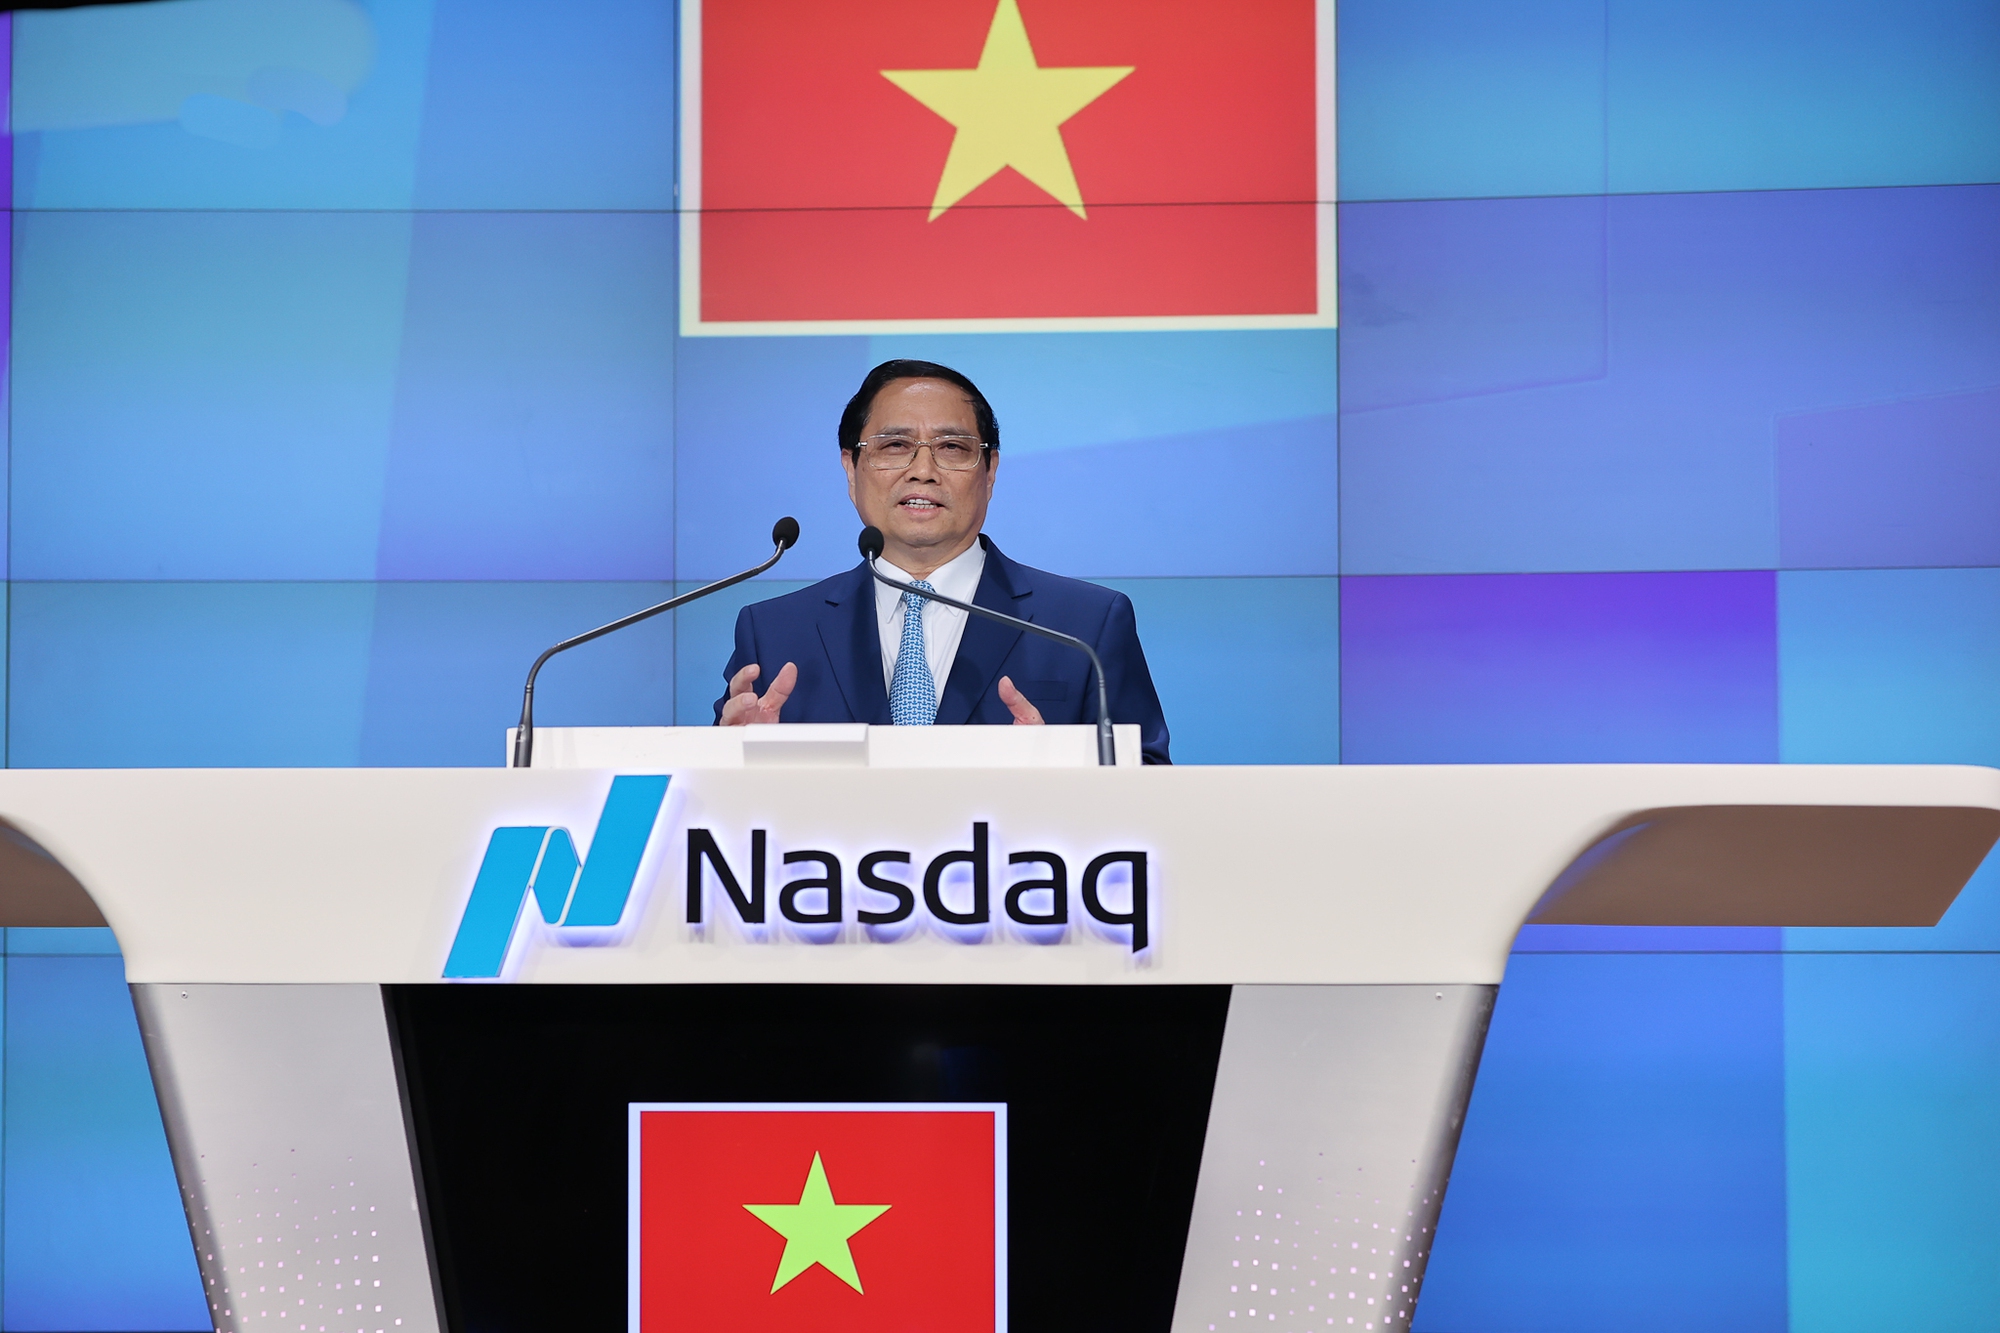 Thủ tướng rung chuông tại Sàn chứng khoán NASDAQ, kêu gọi các nhà đầu tư Hoa Kỳ - Ảnh 5.